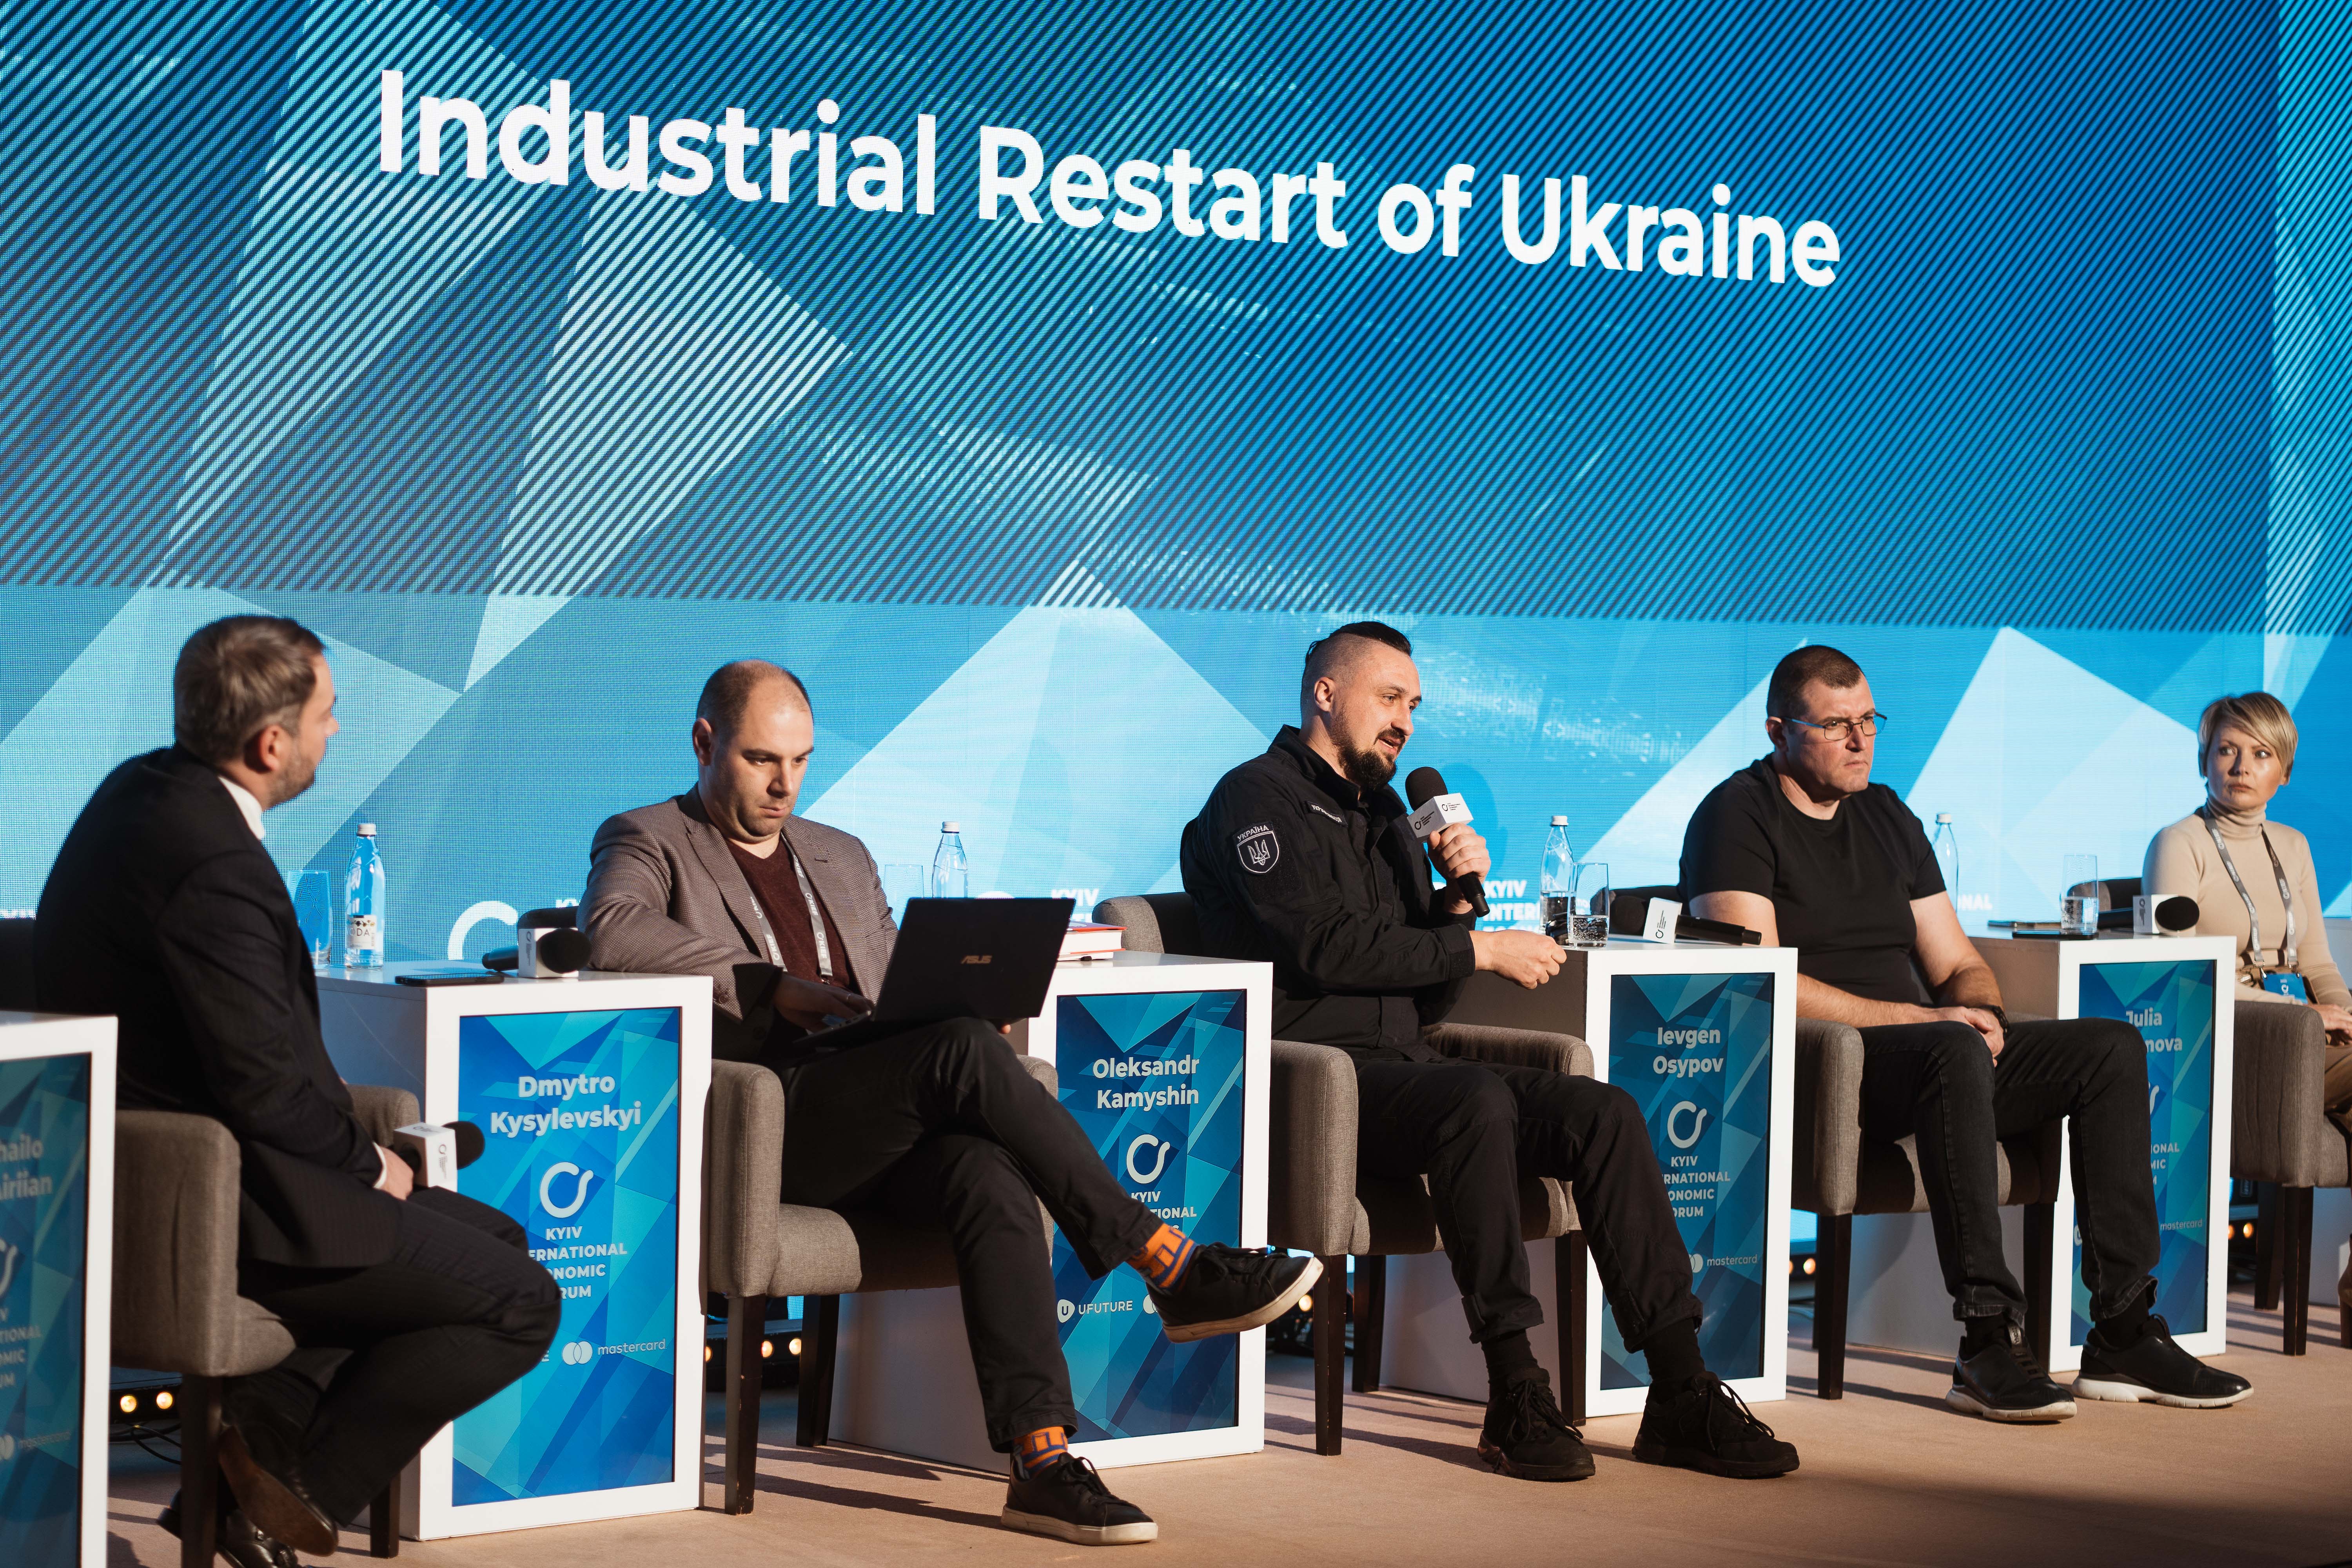  Industrial Restart of Ukraine